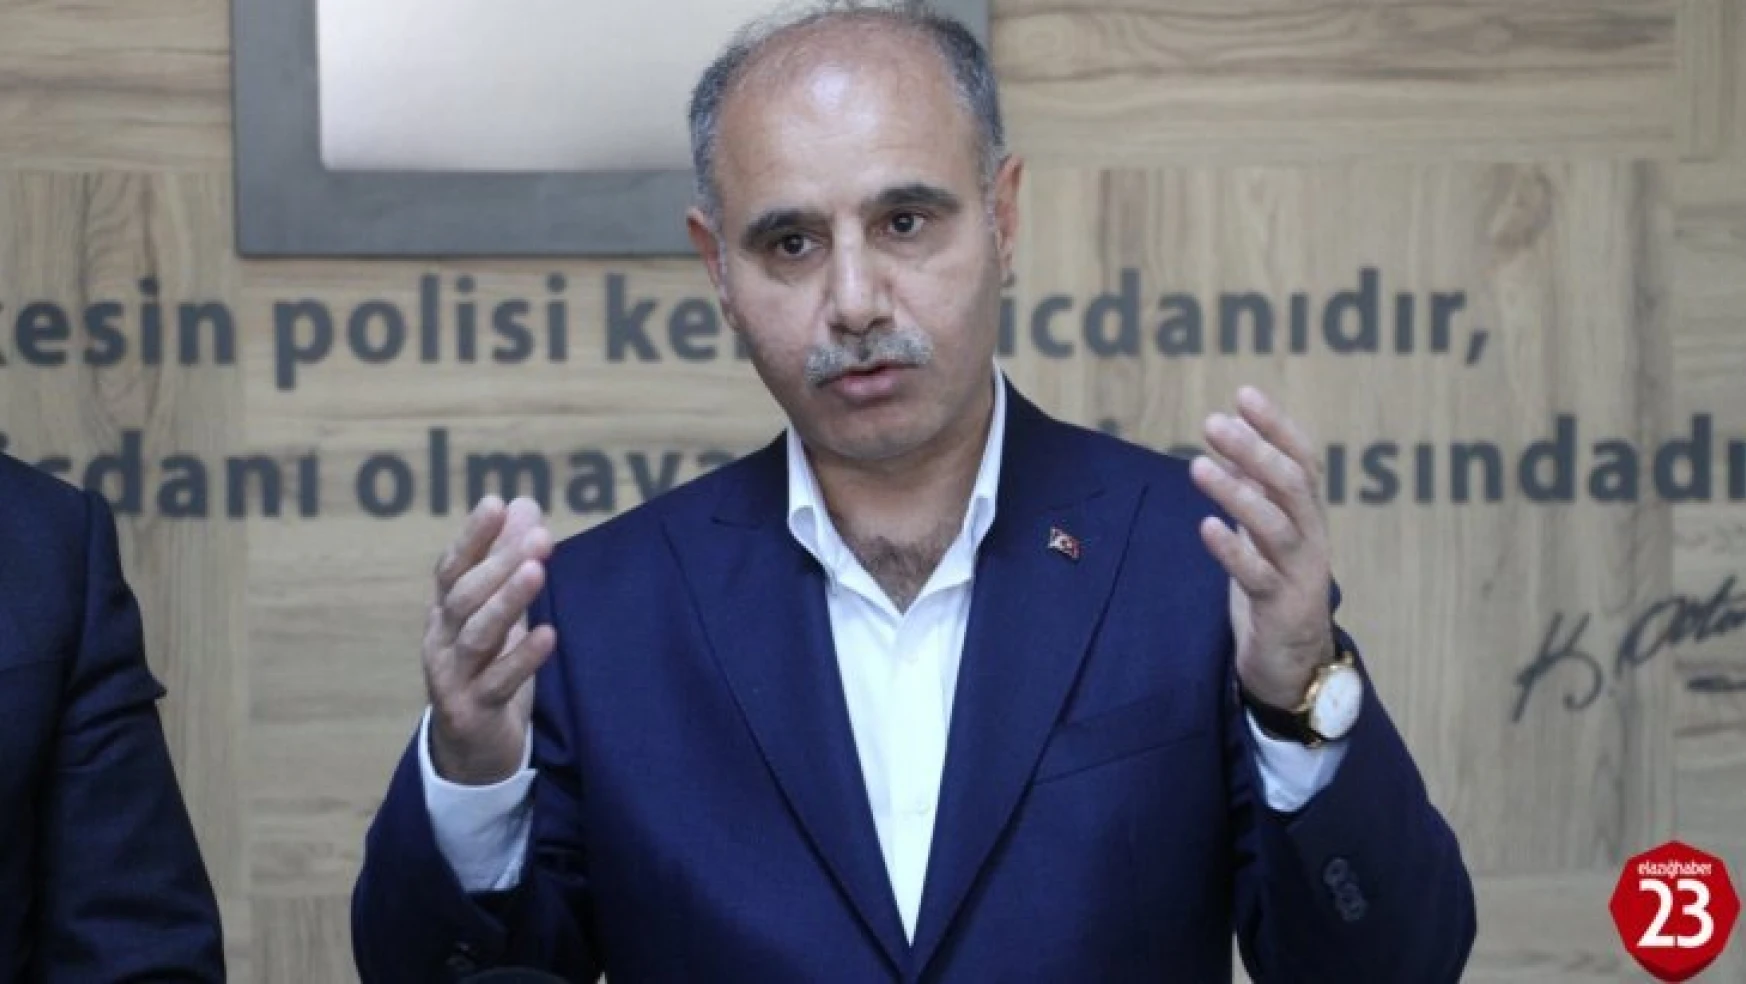 Emniyet Genel Müdürü Aktaş, Elazığ'da Önemli Açıklamalar Yaptı